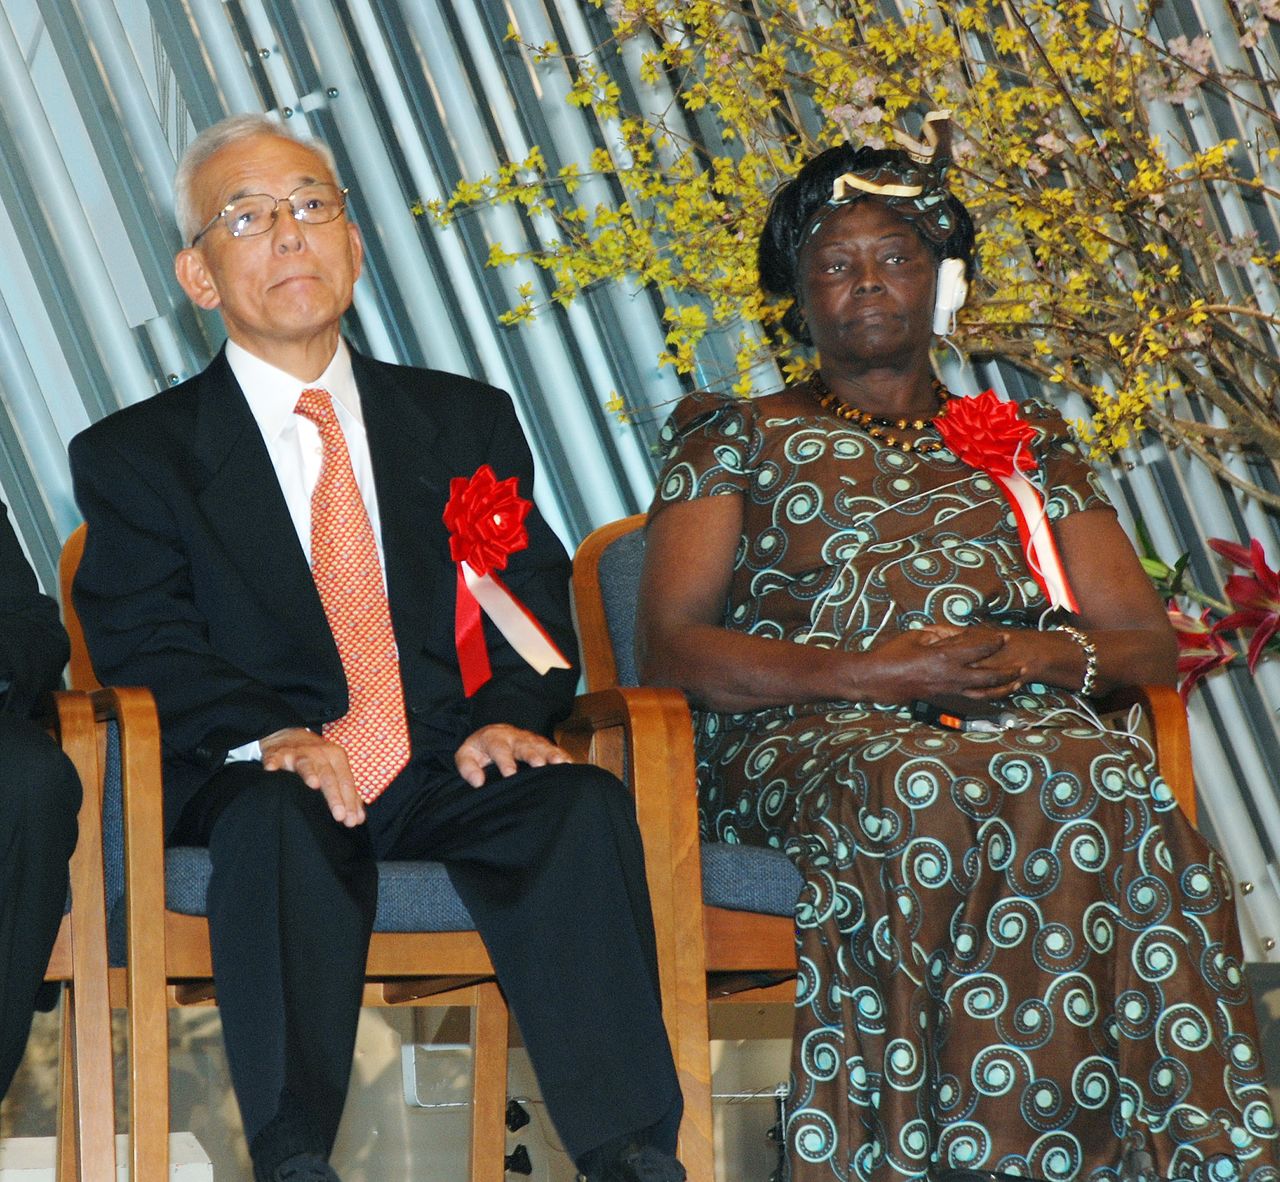 Syukuro Manabe, a la izquierda, sentado junto a la ganadora del Premio Nobel de la Paz en 2004, Wangari Maathai, de Kenia, en una ceremonia celebrada en el Salón de la Fama de la Tierra de Kioto en 2010. (© Jiji)